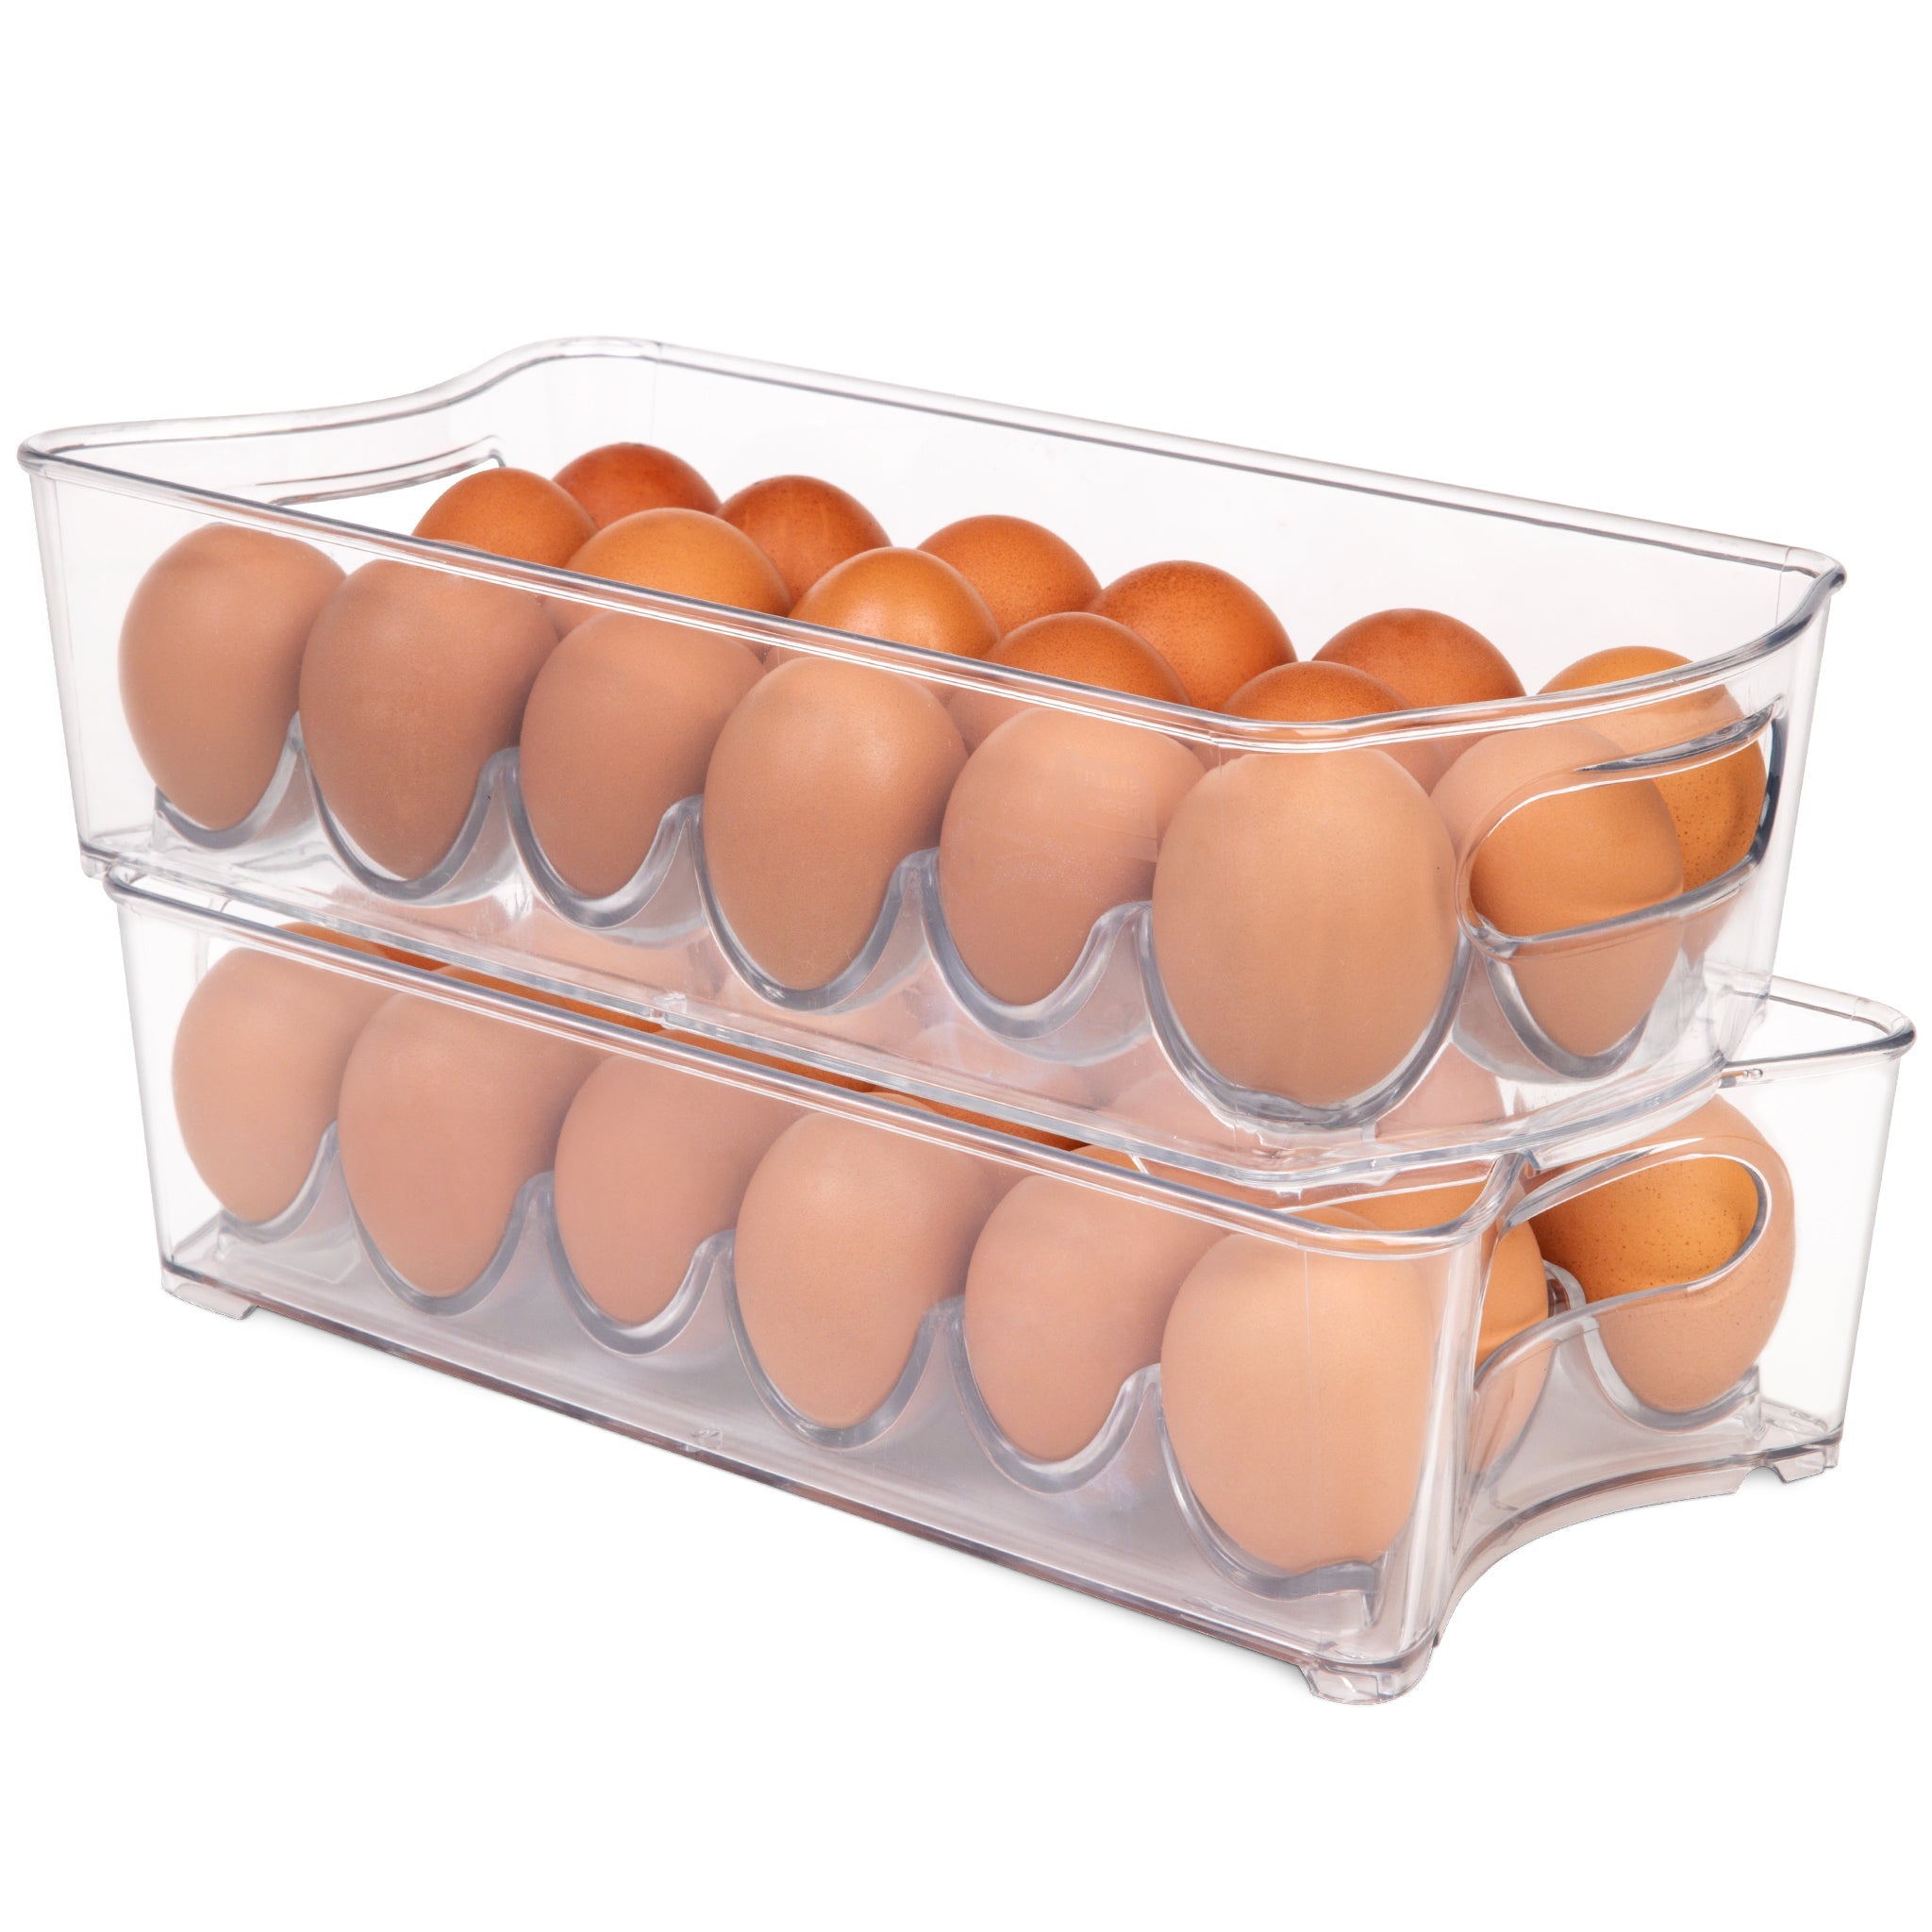 http://www.shopsmartdesign.com/cdn/shop/products/stackable-refrigerator-egg-storage-bin-with-handle-2-pack-smart-design-kitchen-8004291as2-incrementing-number-150728.jpg?v=1679335844